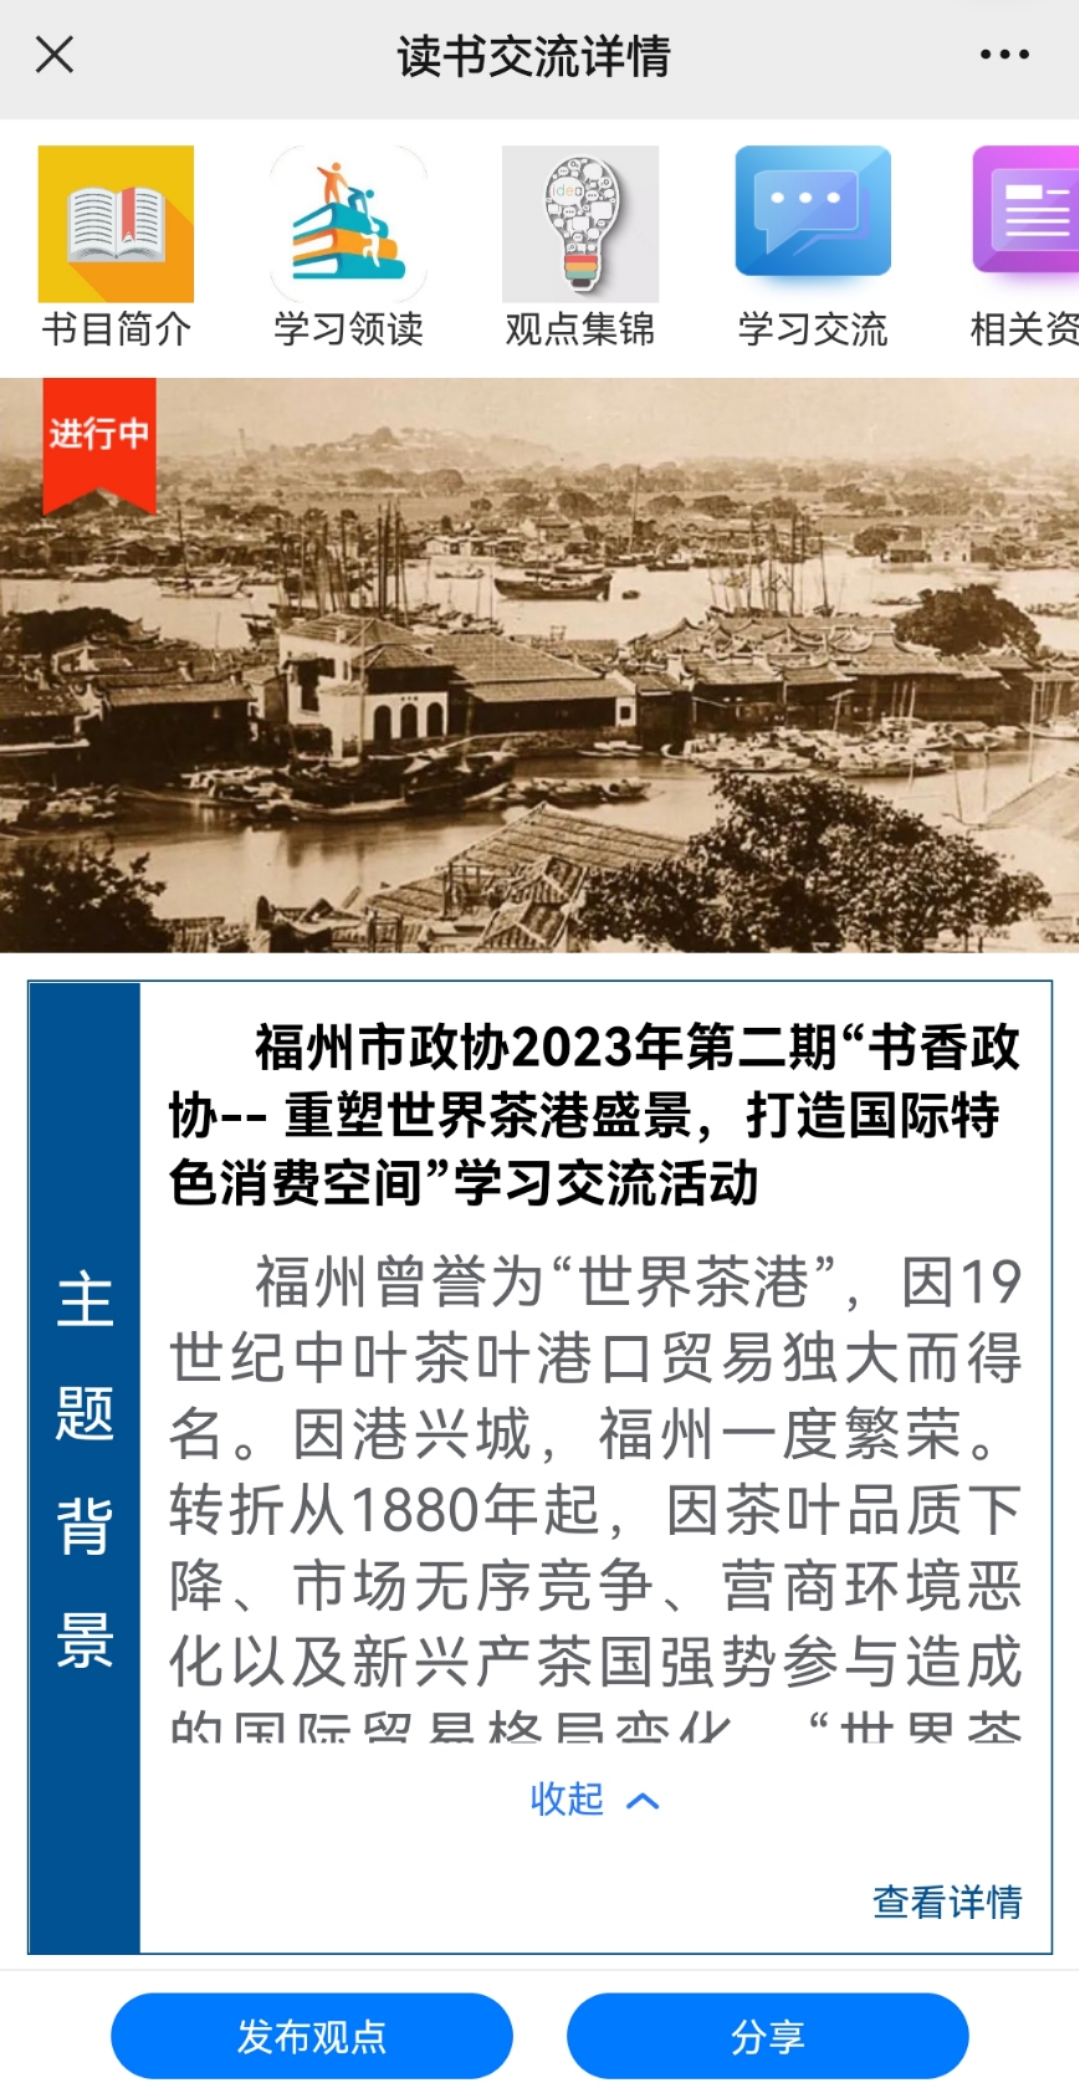 福州市政协开展2023年第二期“书香政协”读书学习交流活动